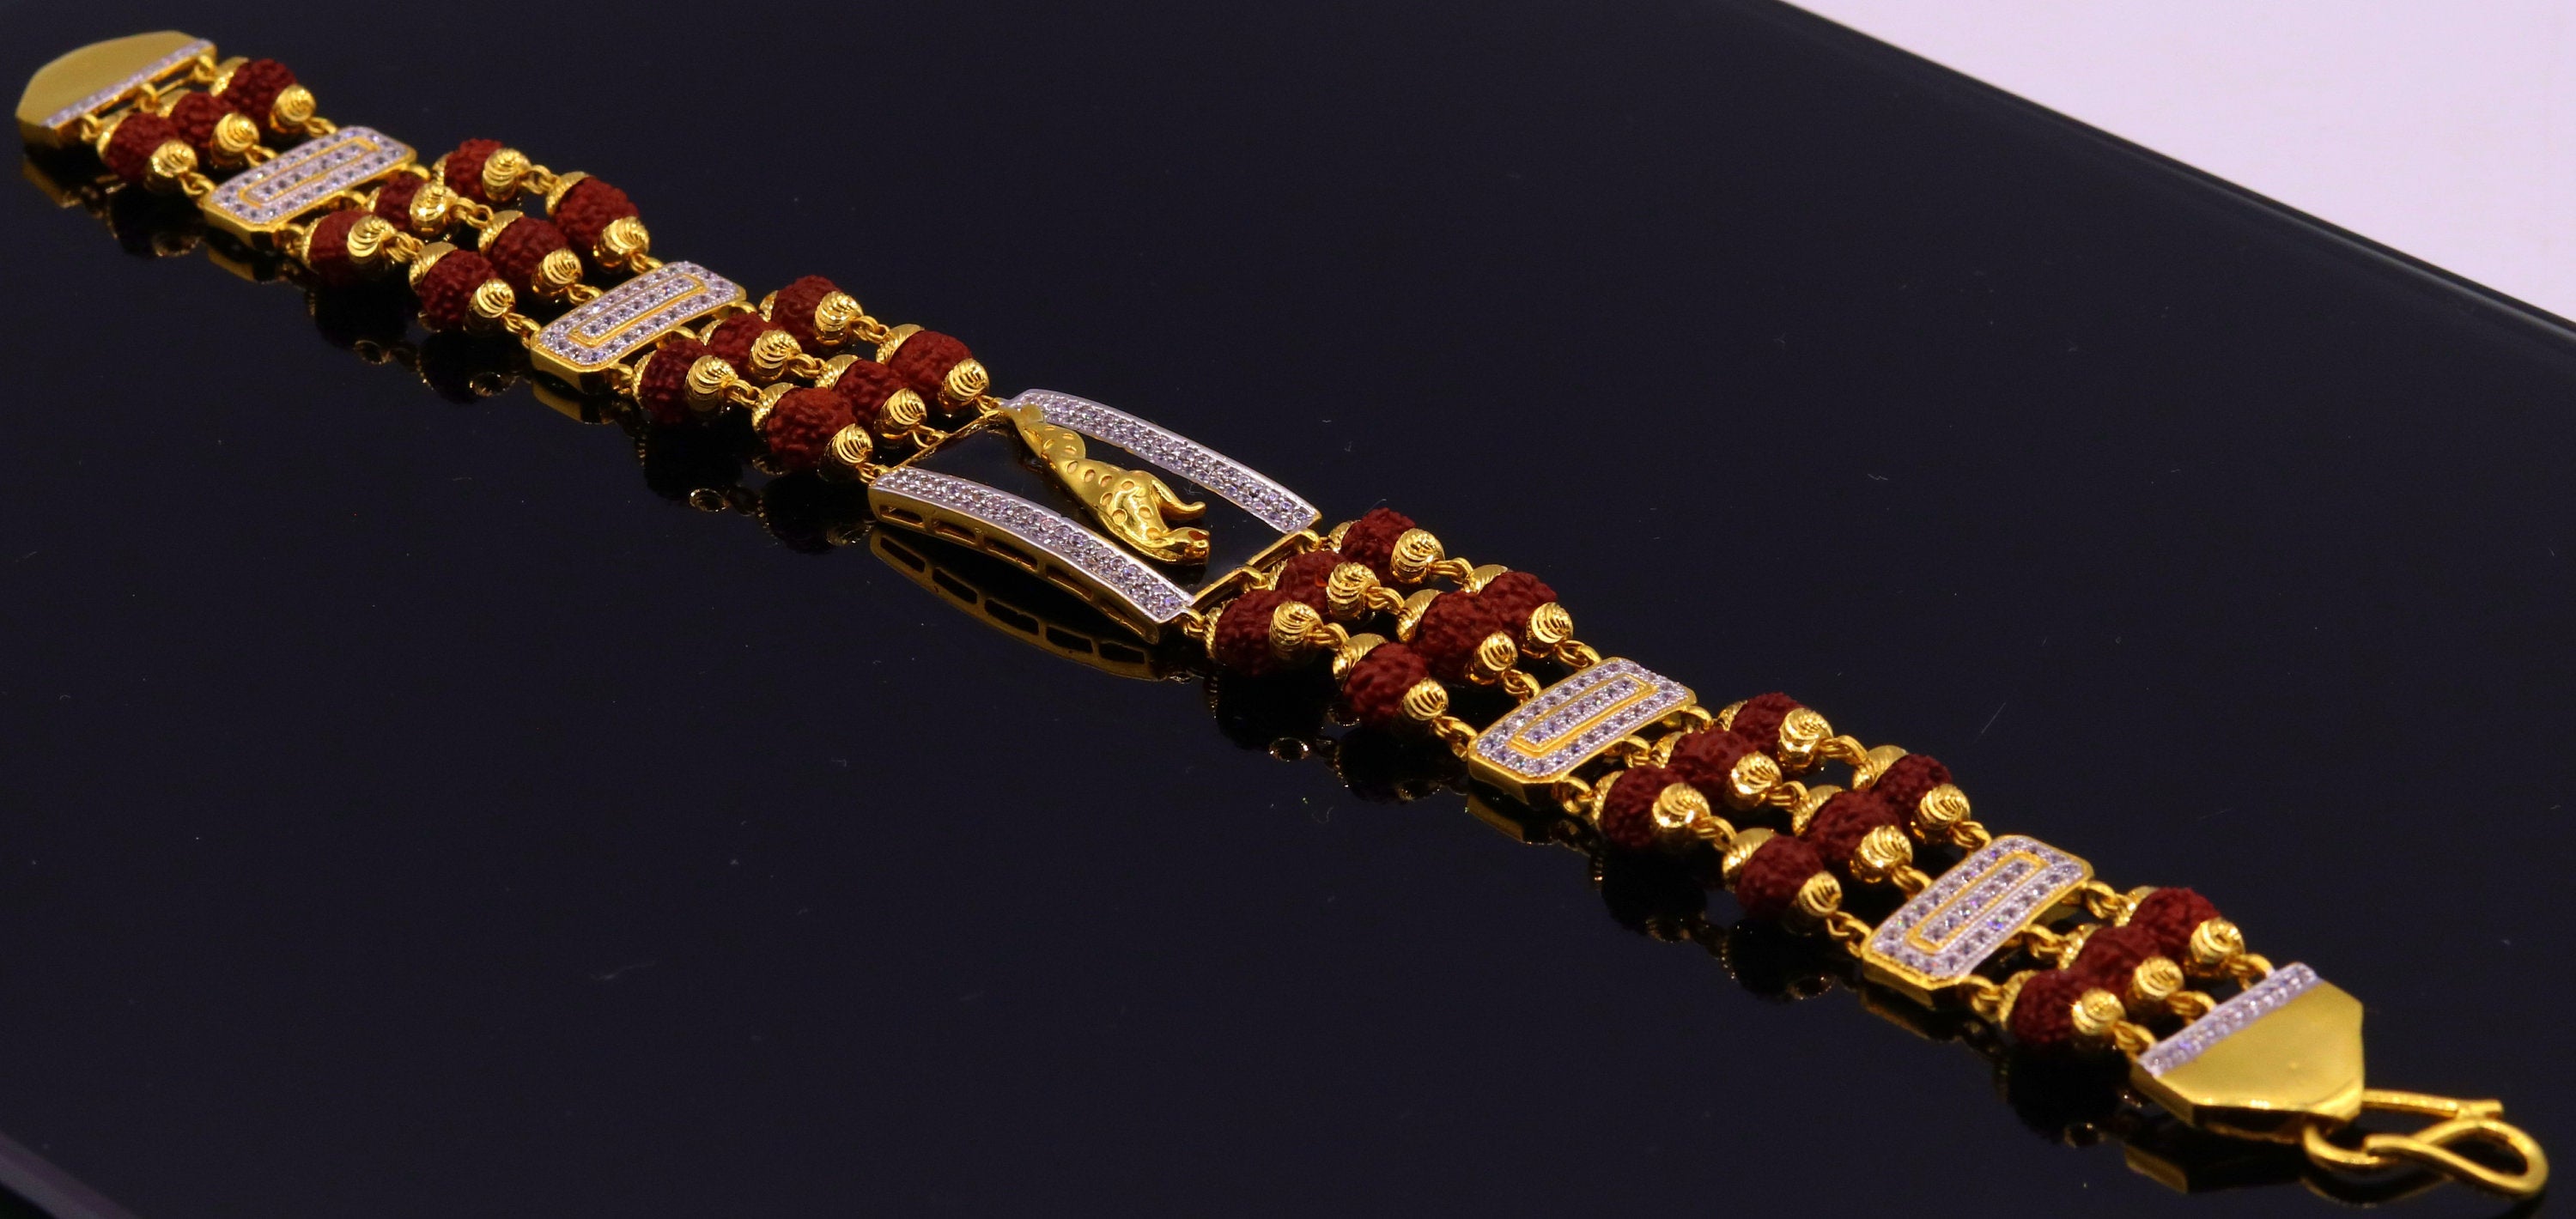 22K Gold 'Rudraksha' Bracelet for Men - 235-GBR2072 in 6.500 Grams